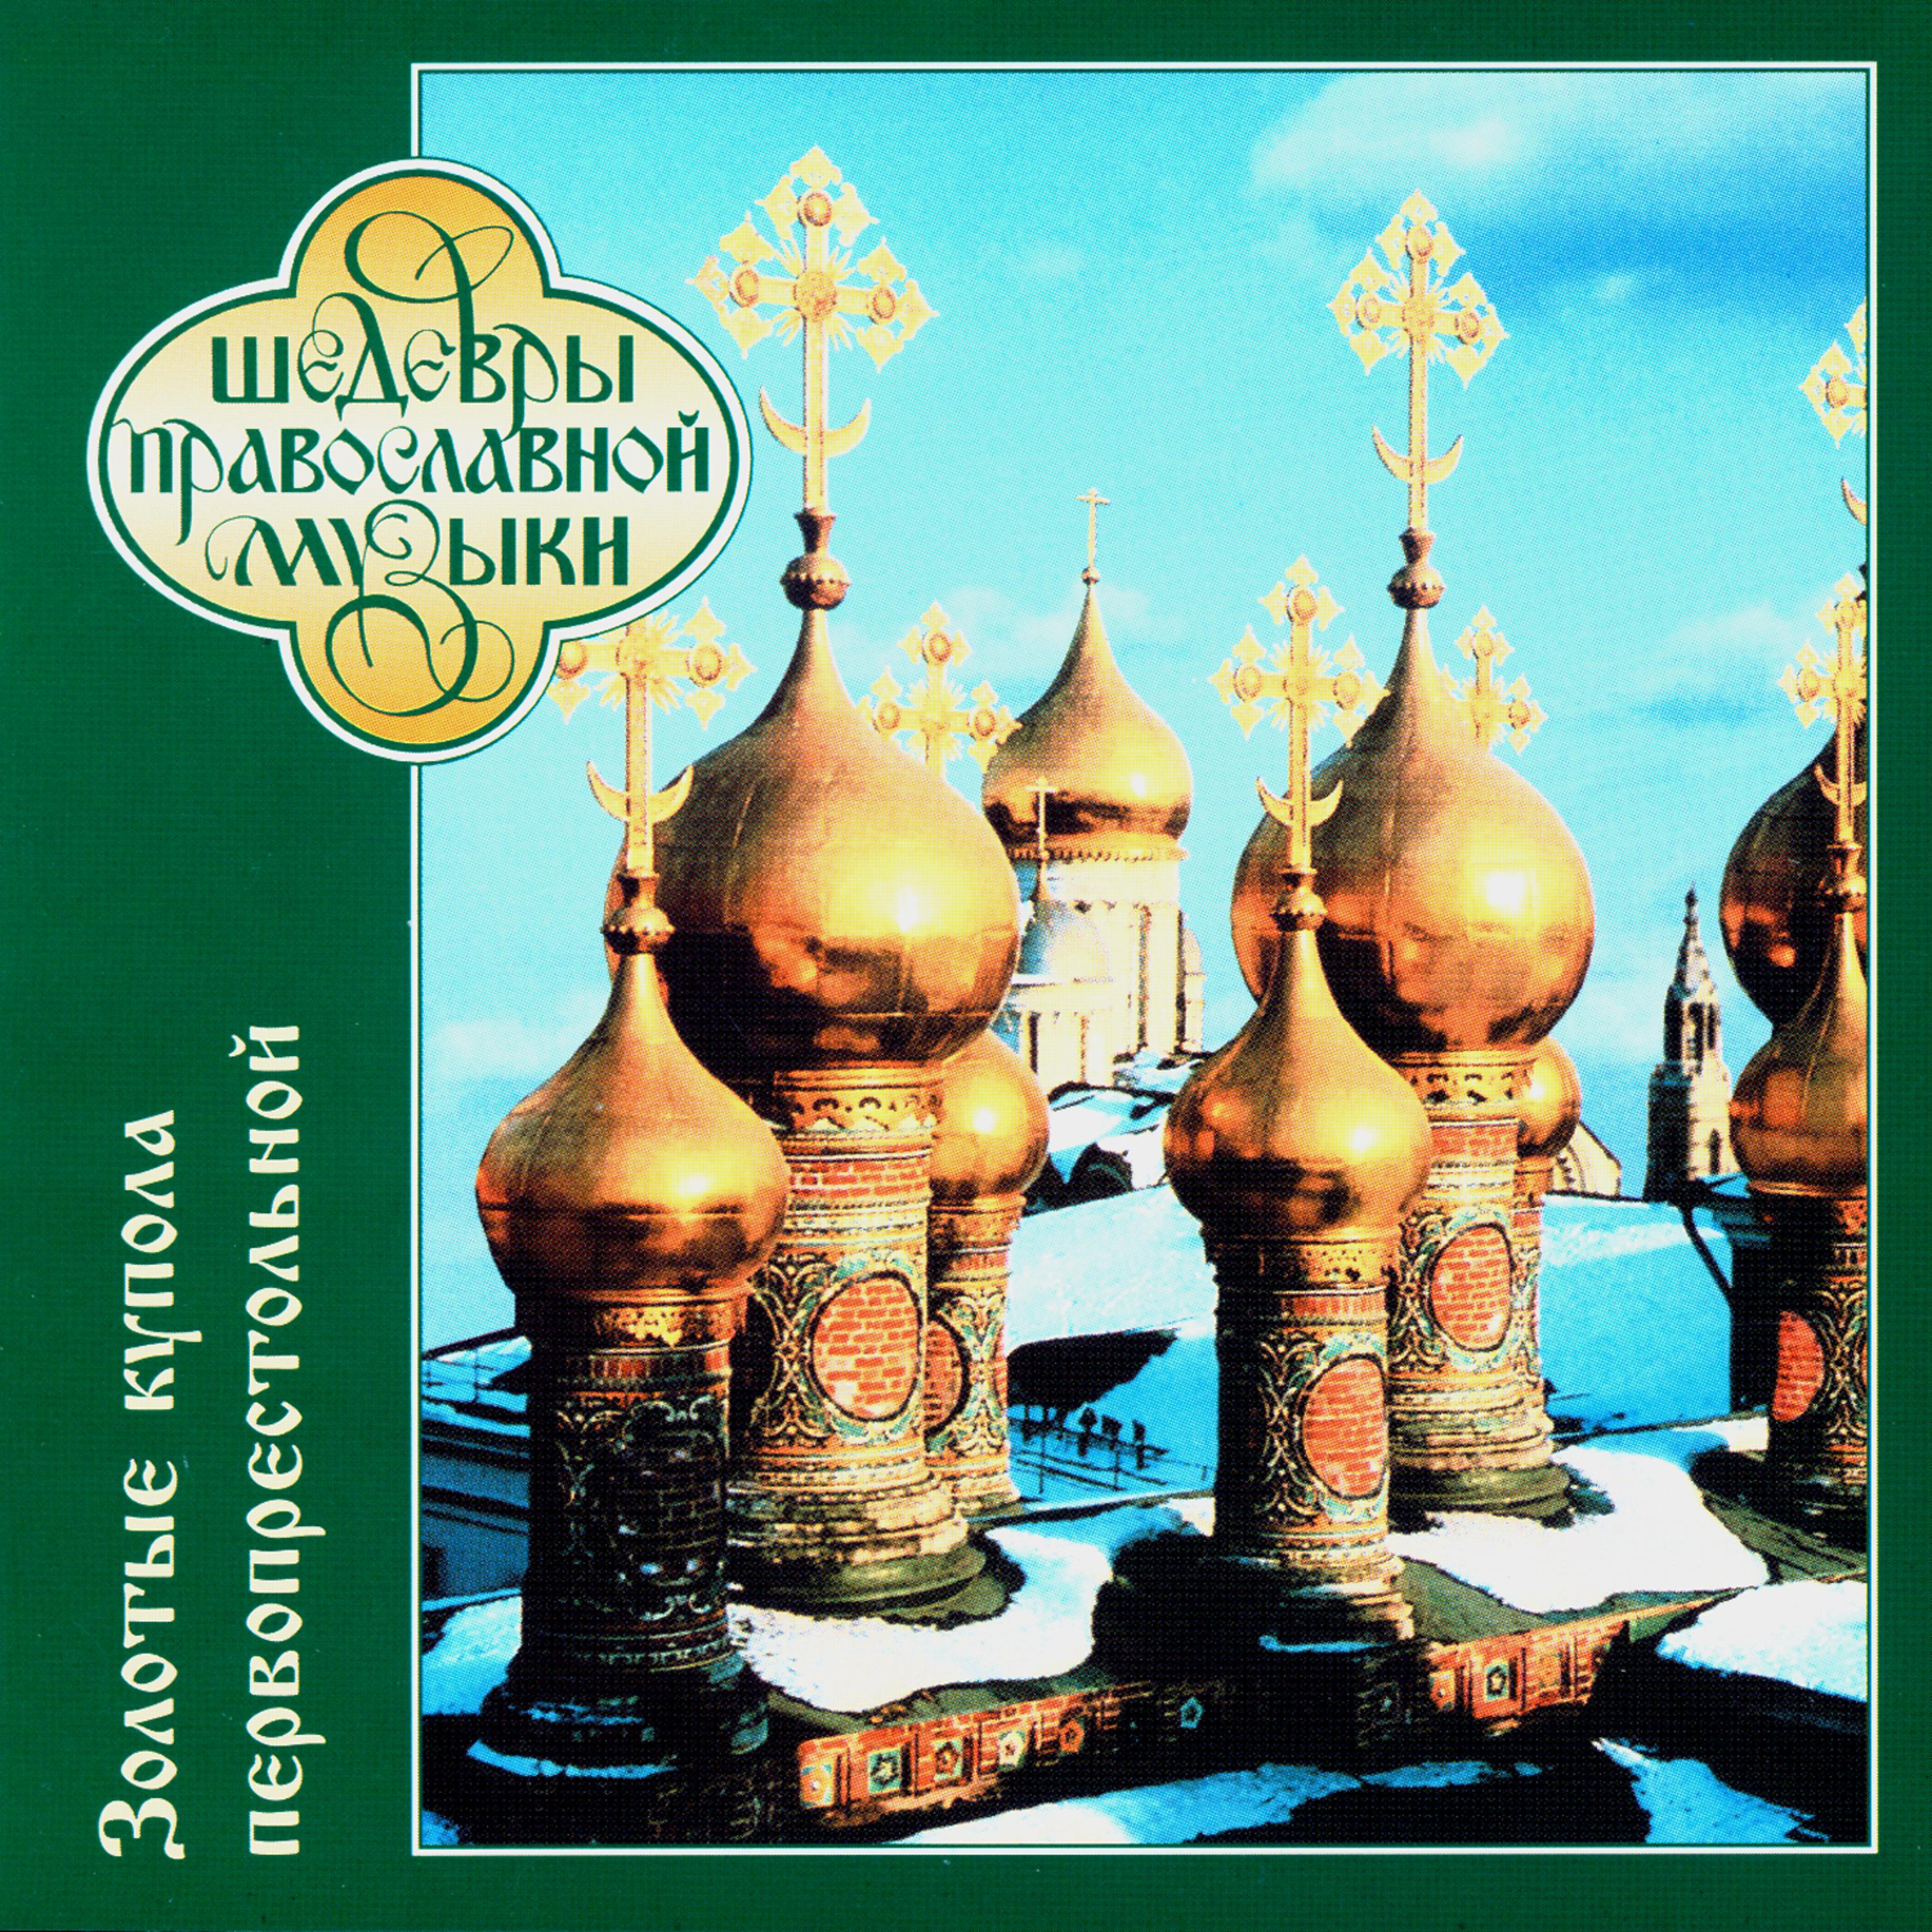 Православные песни сборник